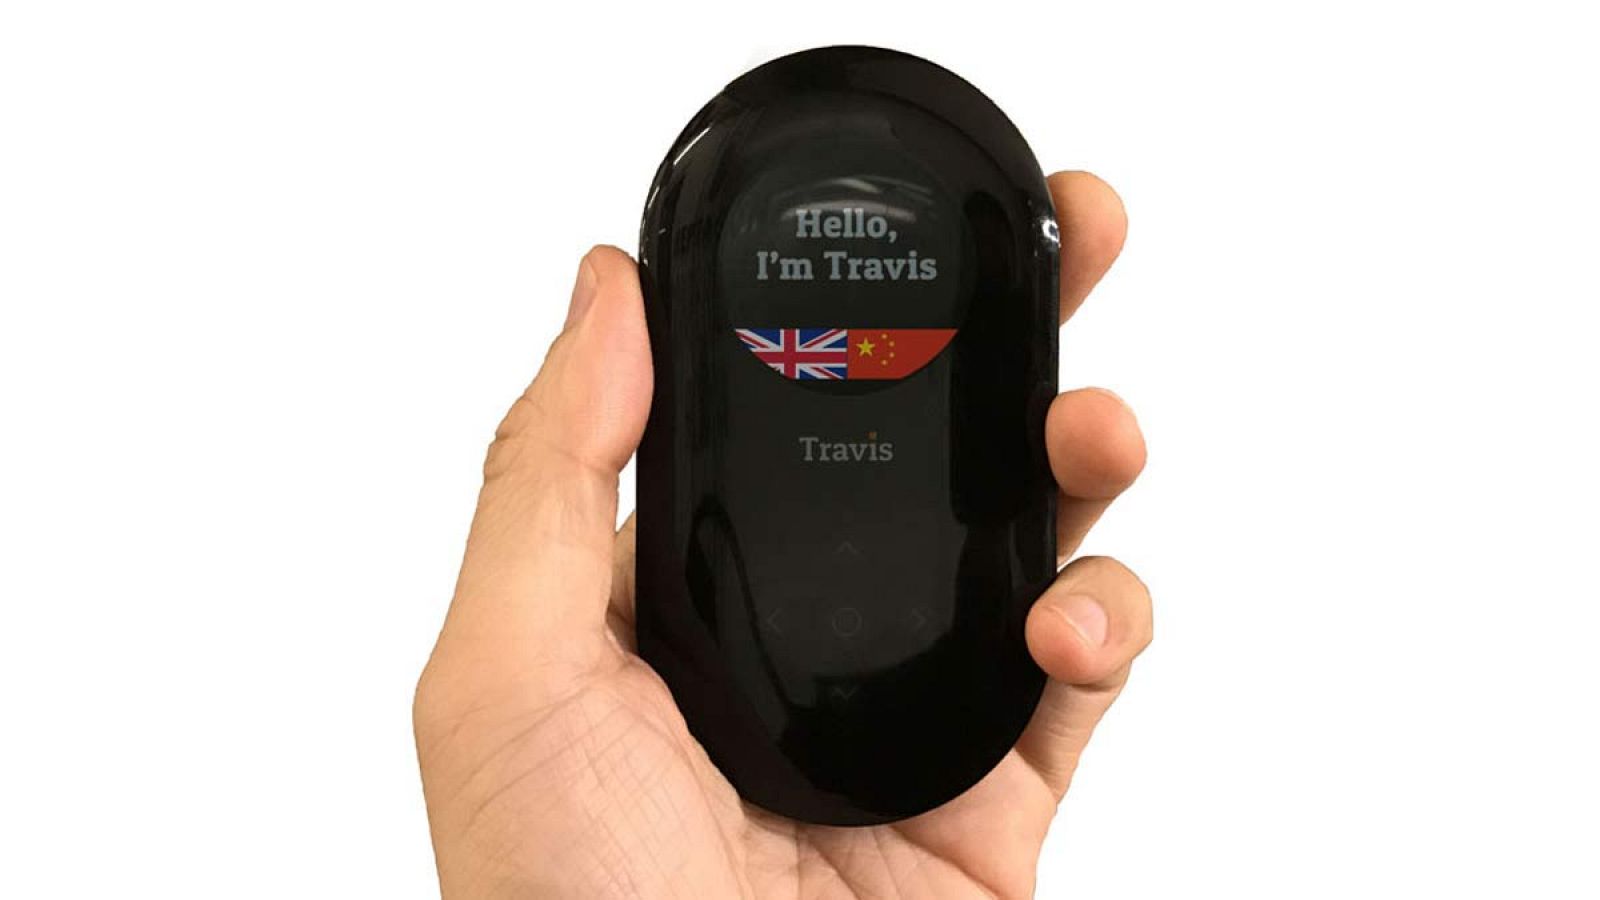 Traductor de voz inteligente portátil Traductor de voz instantáneo  Bluetooth Traductor de negocios de viajes en